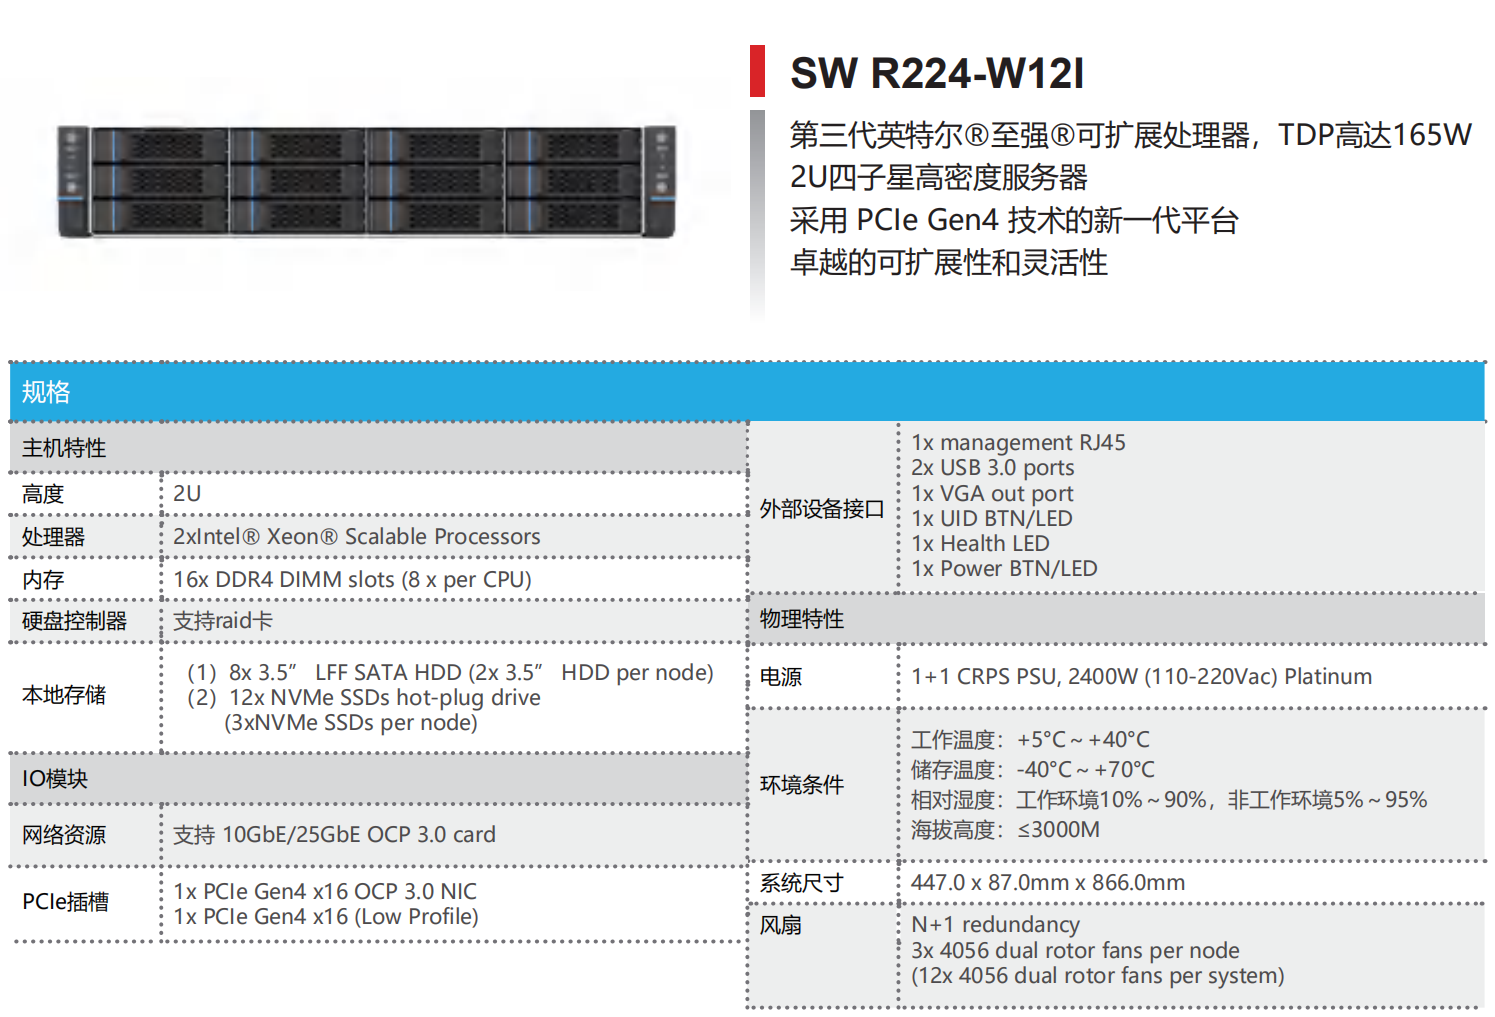 INTEL 平台高密度服务器—SW R224-W12I(图1)